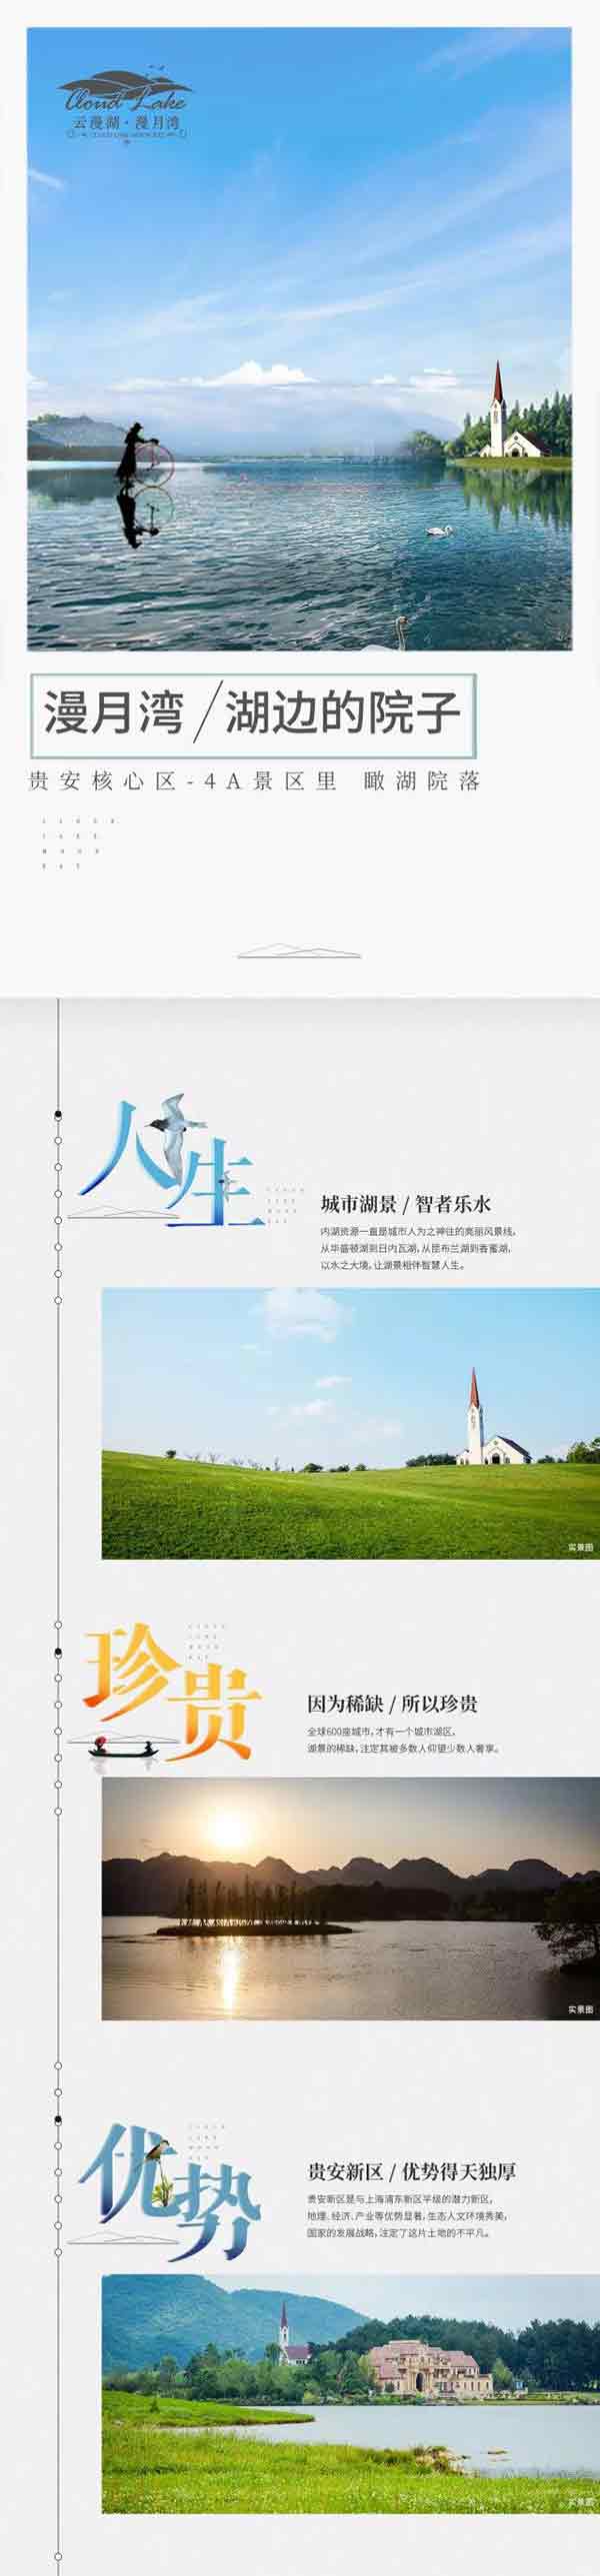 贵安漫月湾：4A景区的湖边院子-中国网地产